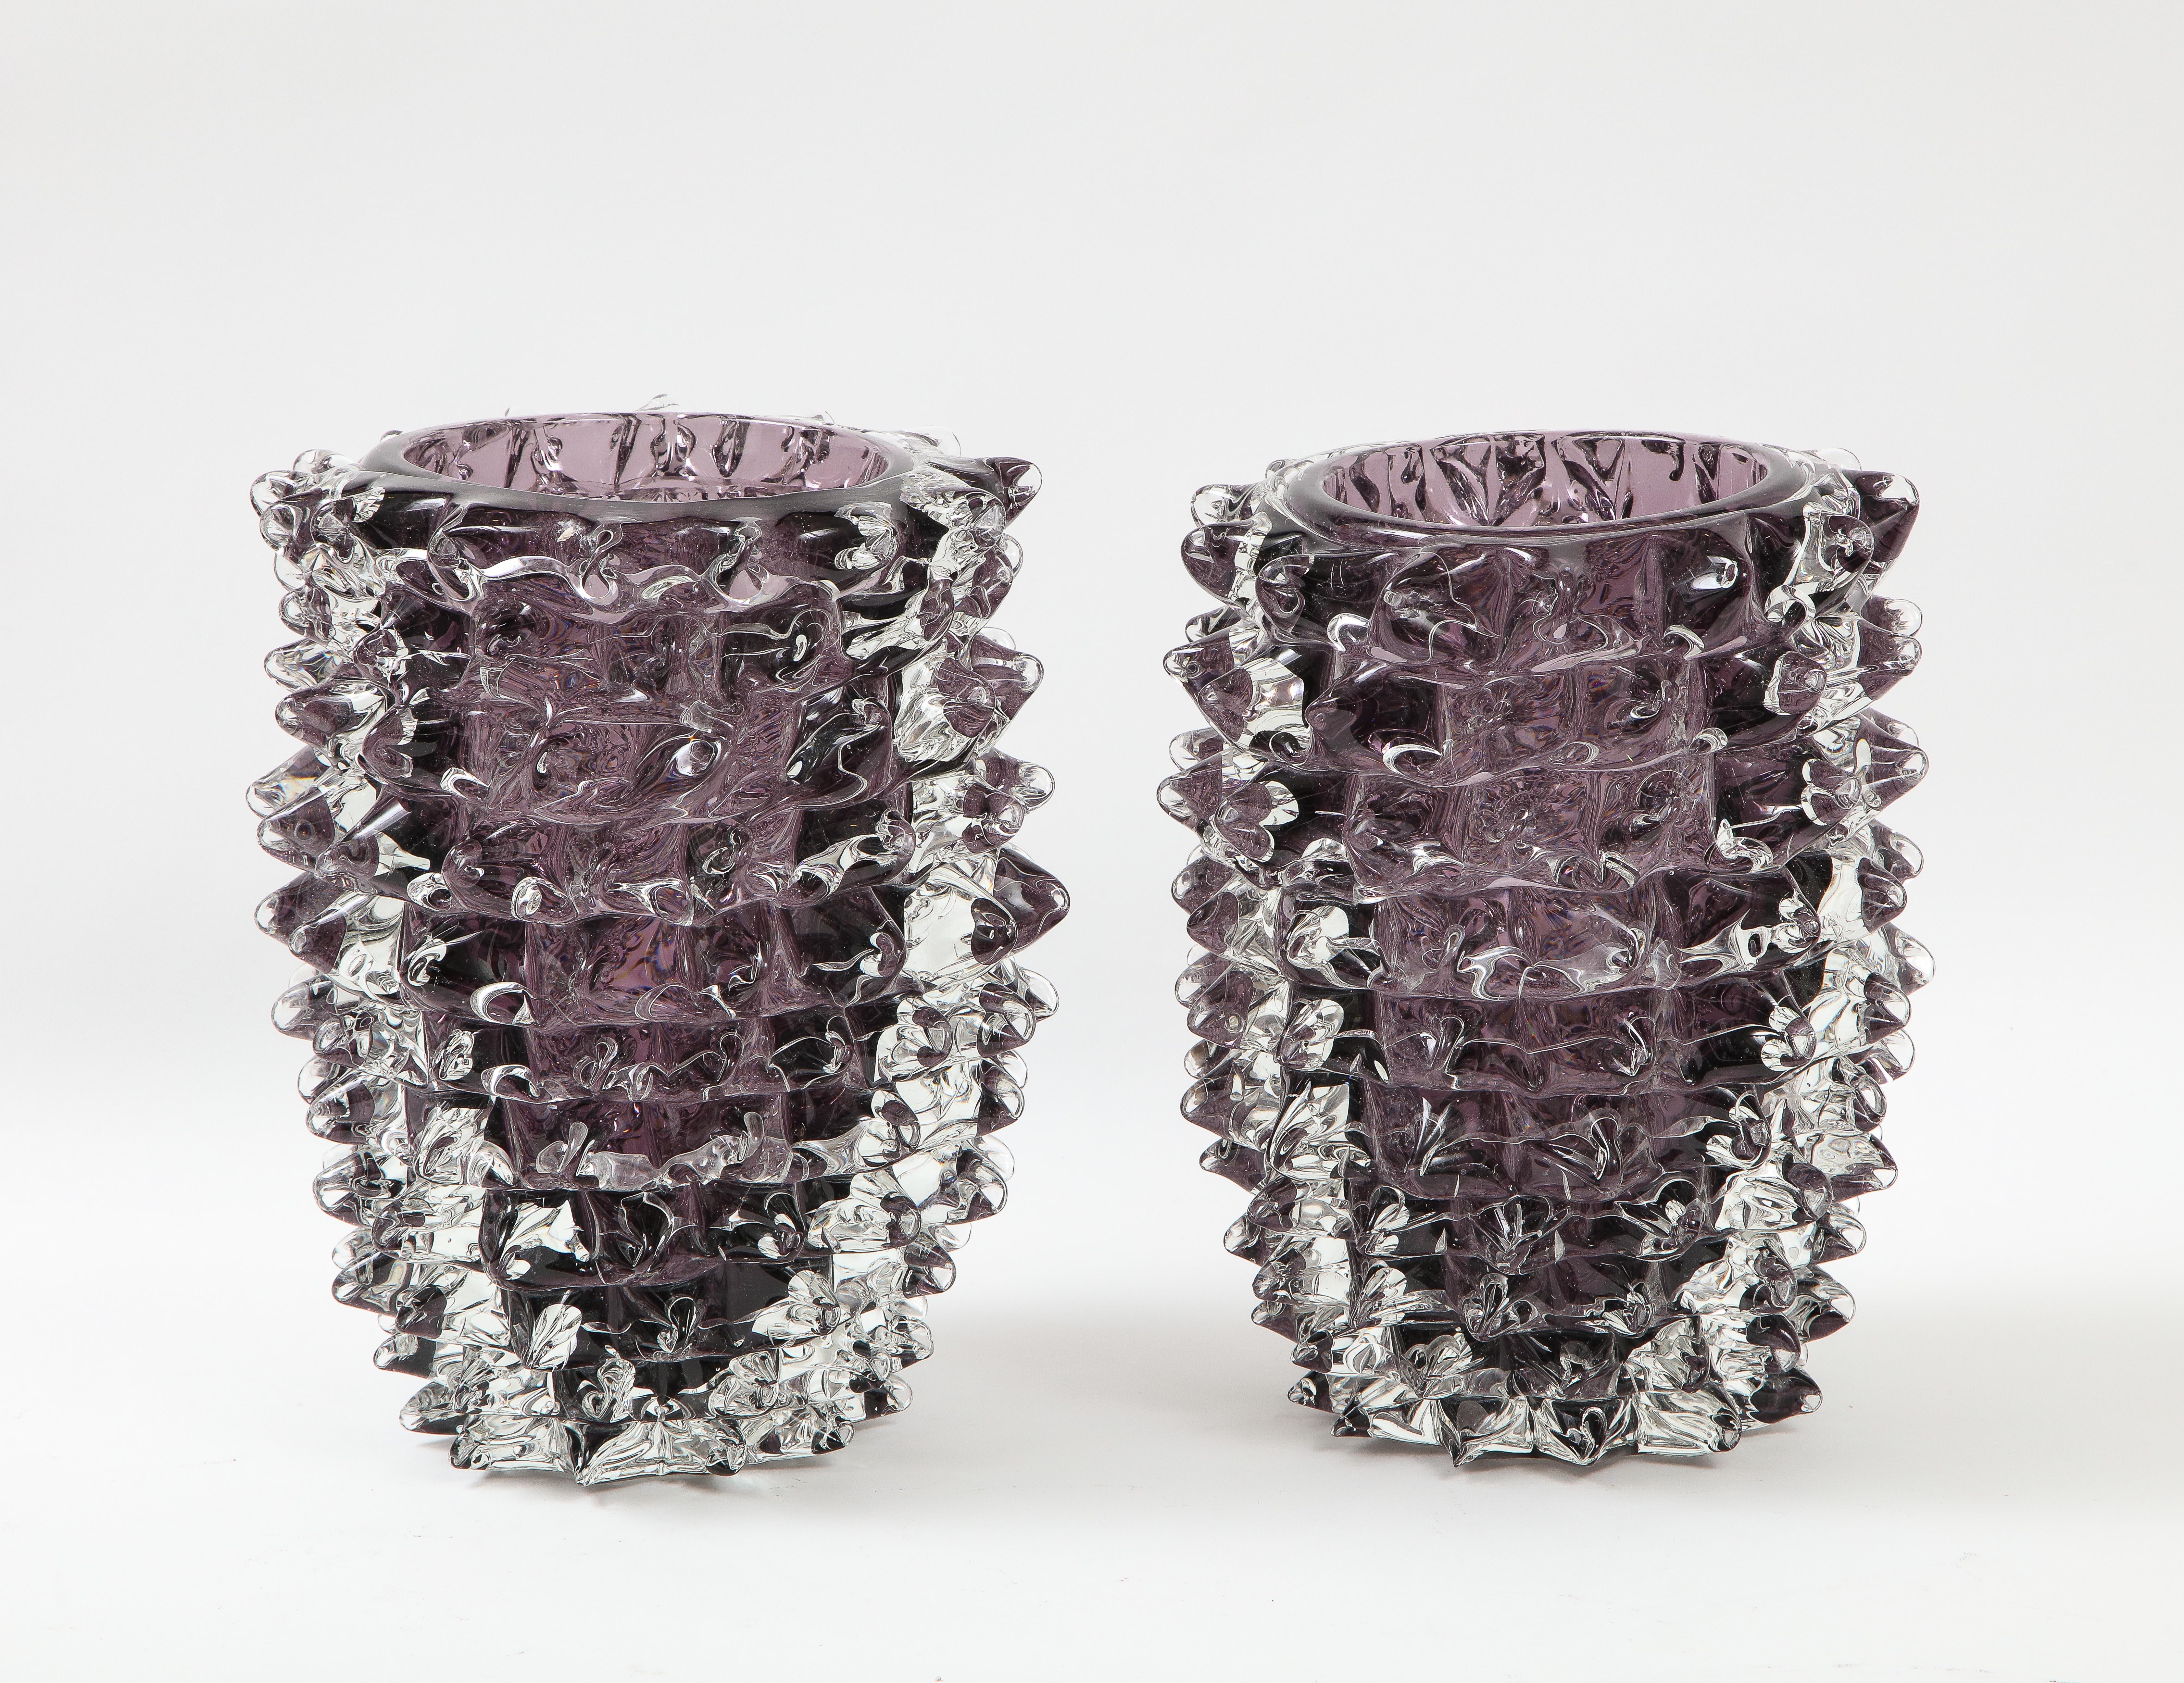 Vase en verre de Murano clair et améthyste (violet) soufflé à la main, à la manière emblématique du verre 